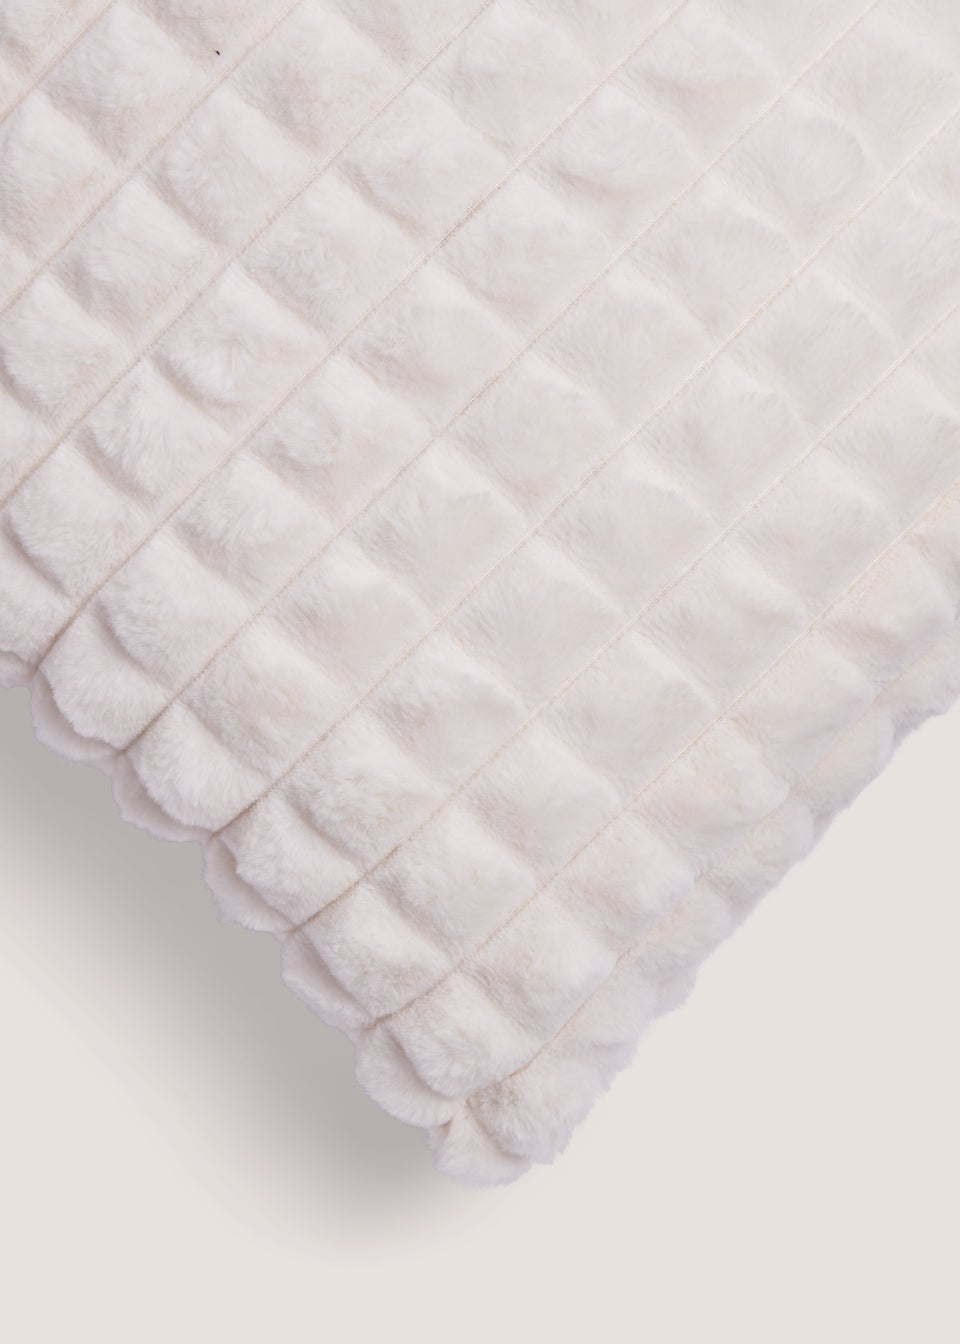 White Grid Faux Fur Cushion (43cm x 43cm)